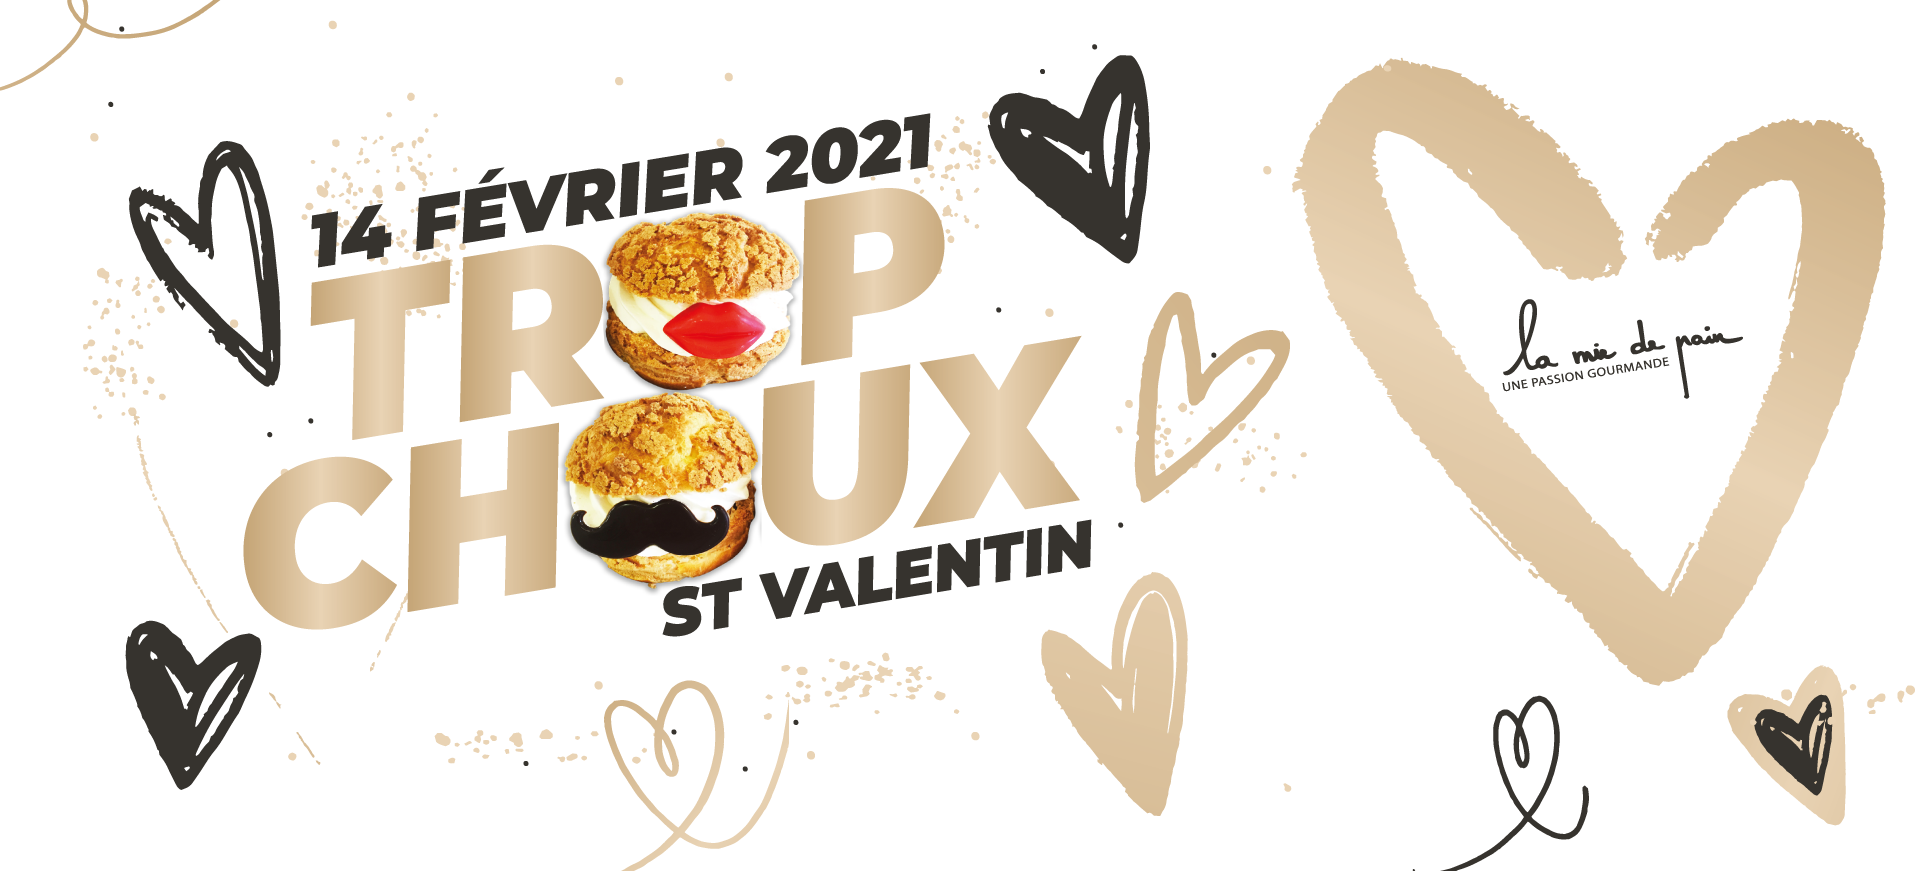 st-valentin-la-mie-de-pain-2021-choux-a-la-creme-1920x871px